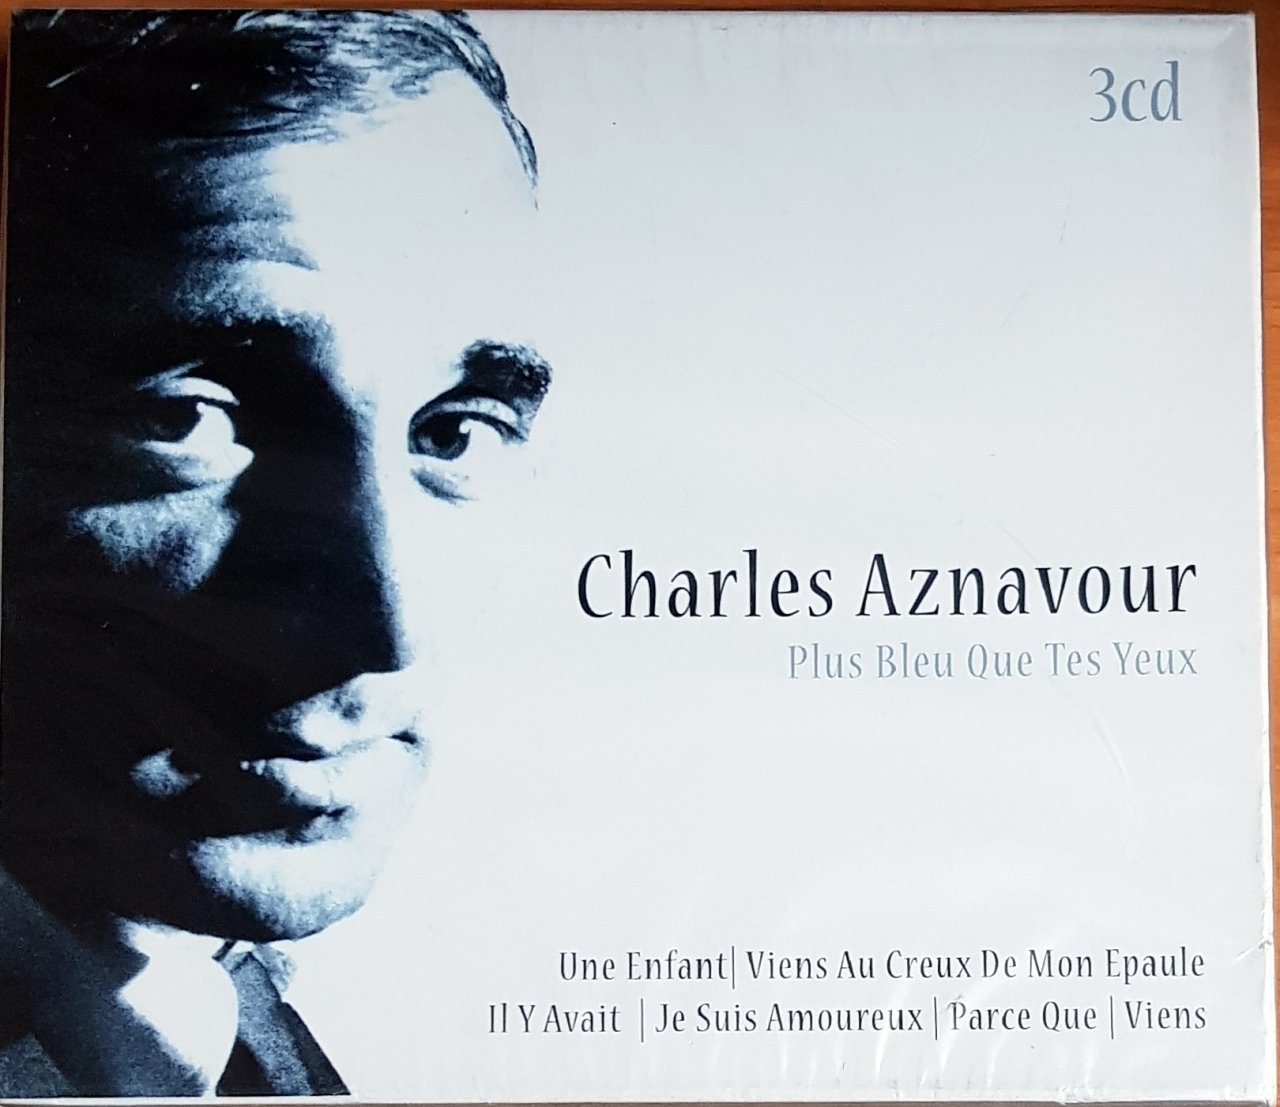 CHARLES AZNAVOUR - PLUS BLEU QUE TES YEUX (2008) DGR RECORDS 3CD SIFIR